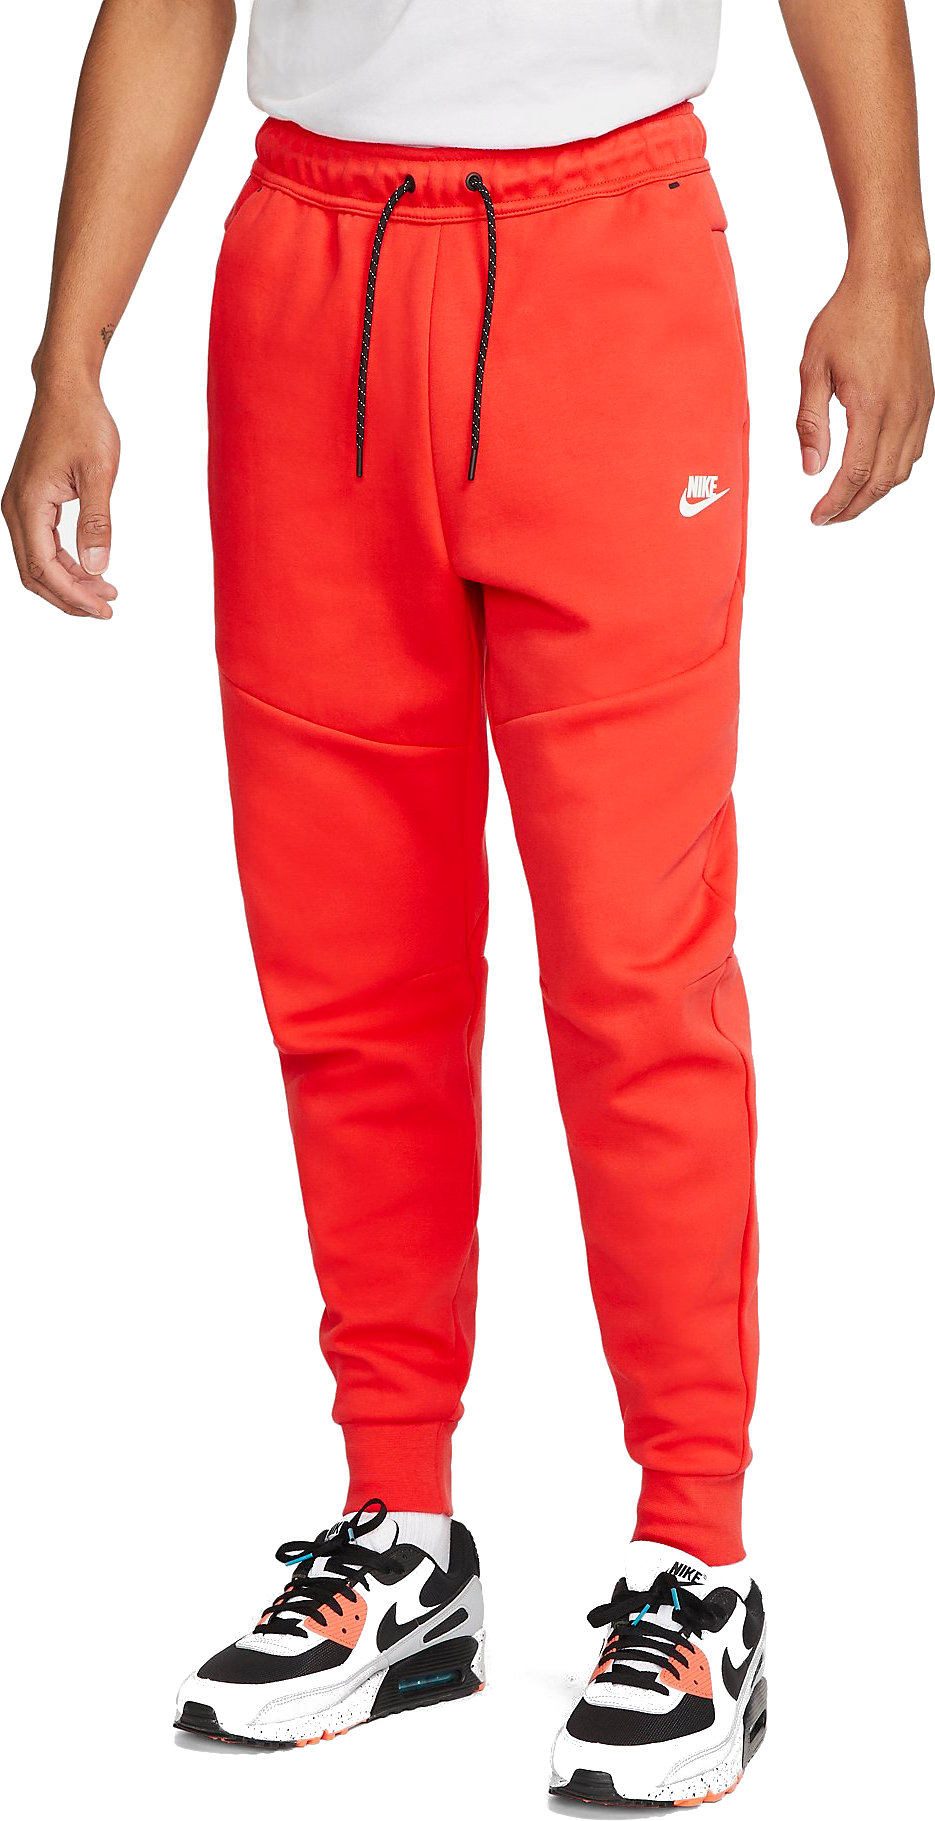 Housut Nike Sportswear Tech Fleece Men s Joggers